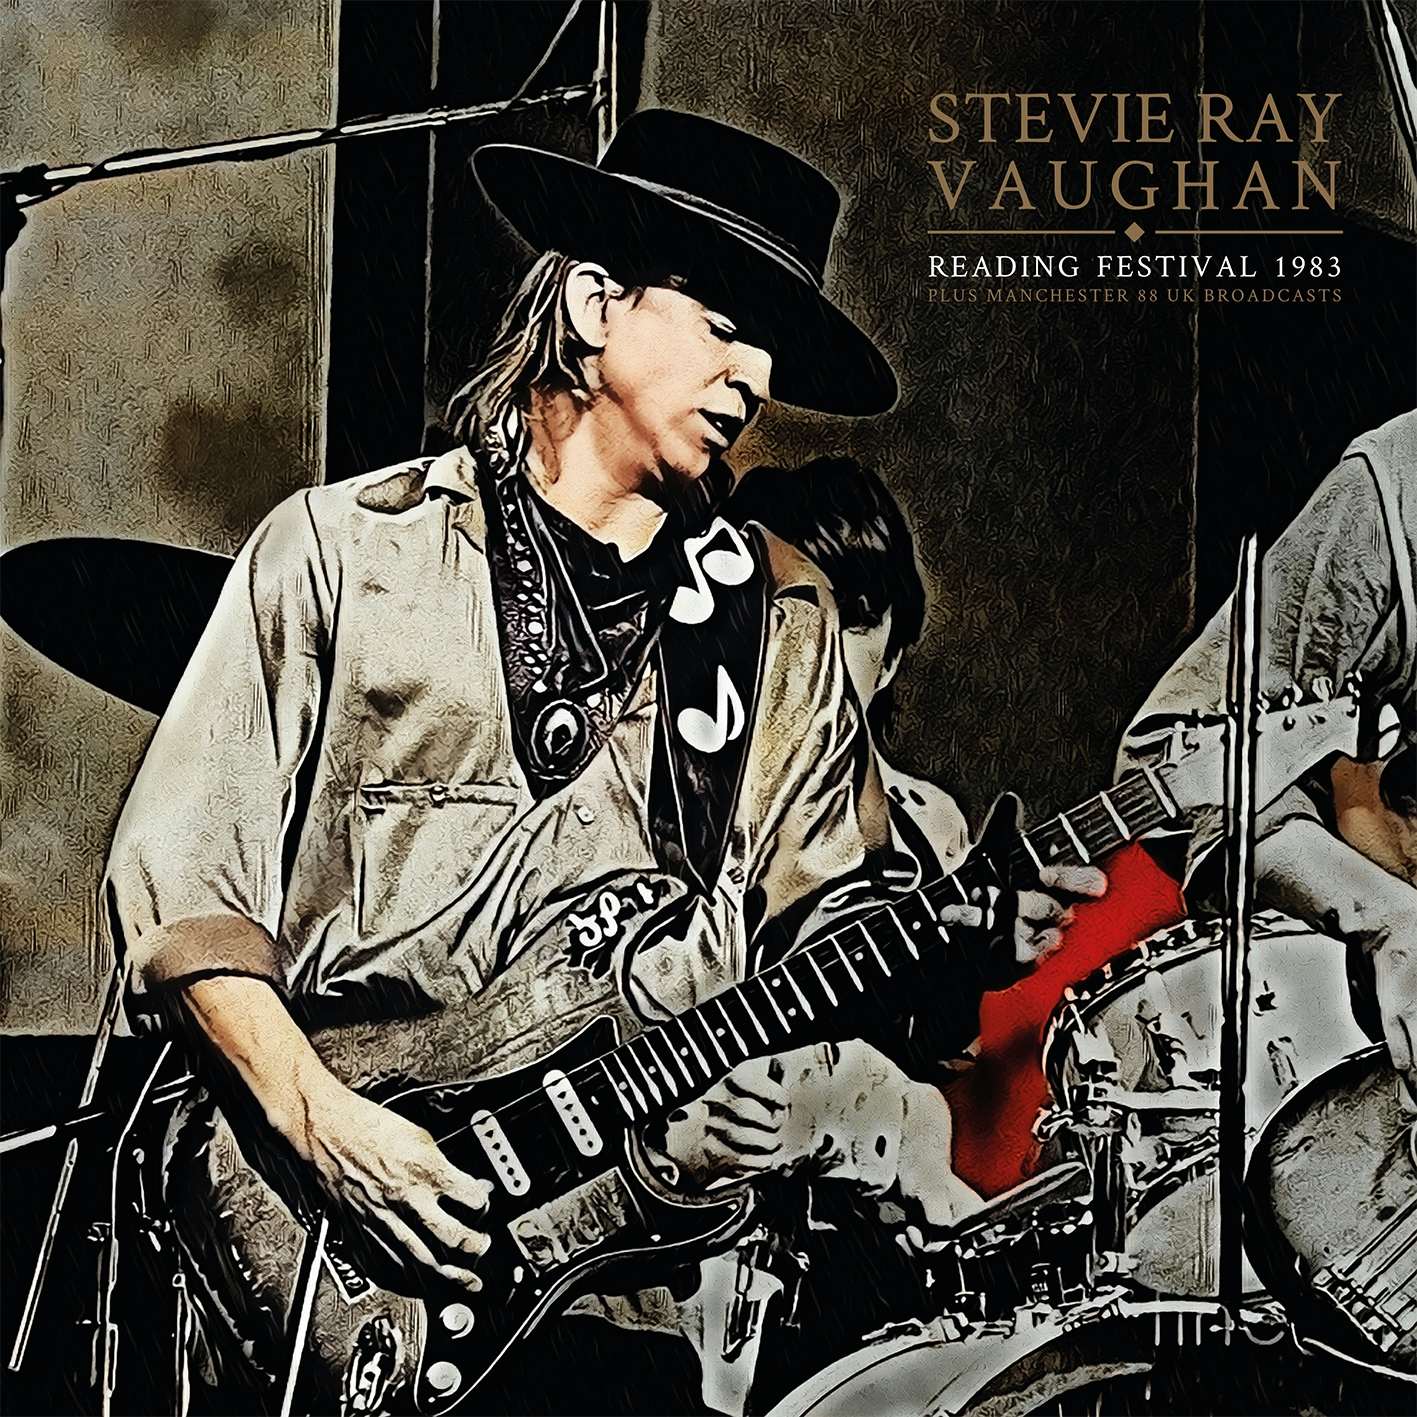 Album artwork for Album artwork for Reading Festival 1983 by Stevie Ray Vaughan by Reading Festival 1983 - Stevie Ray Vaughan